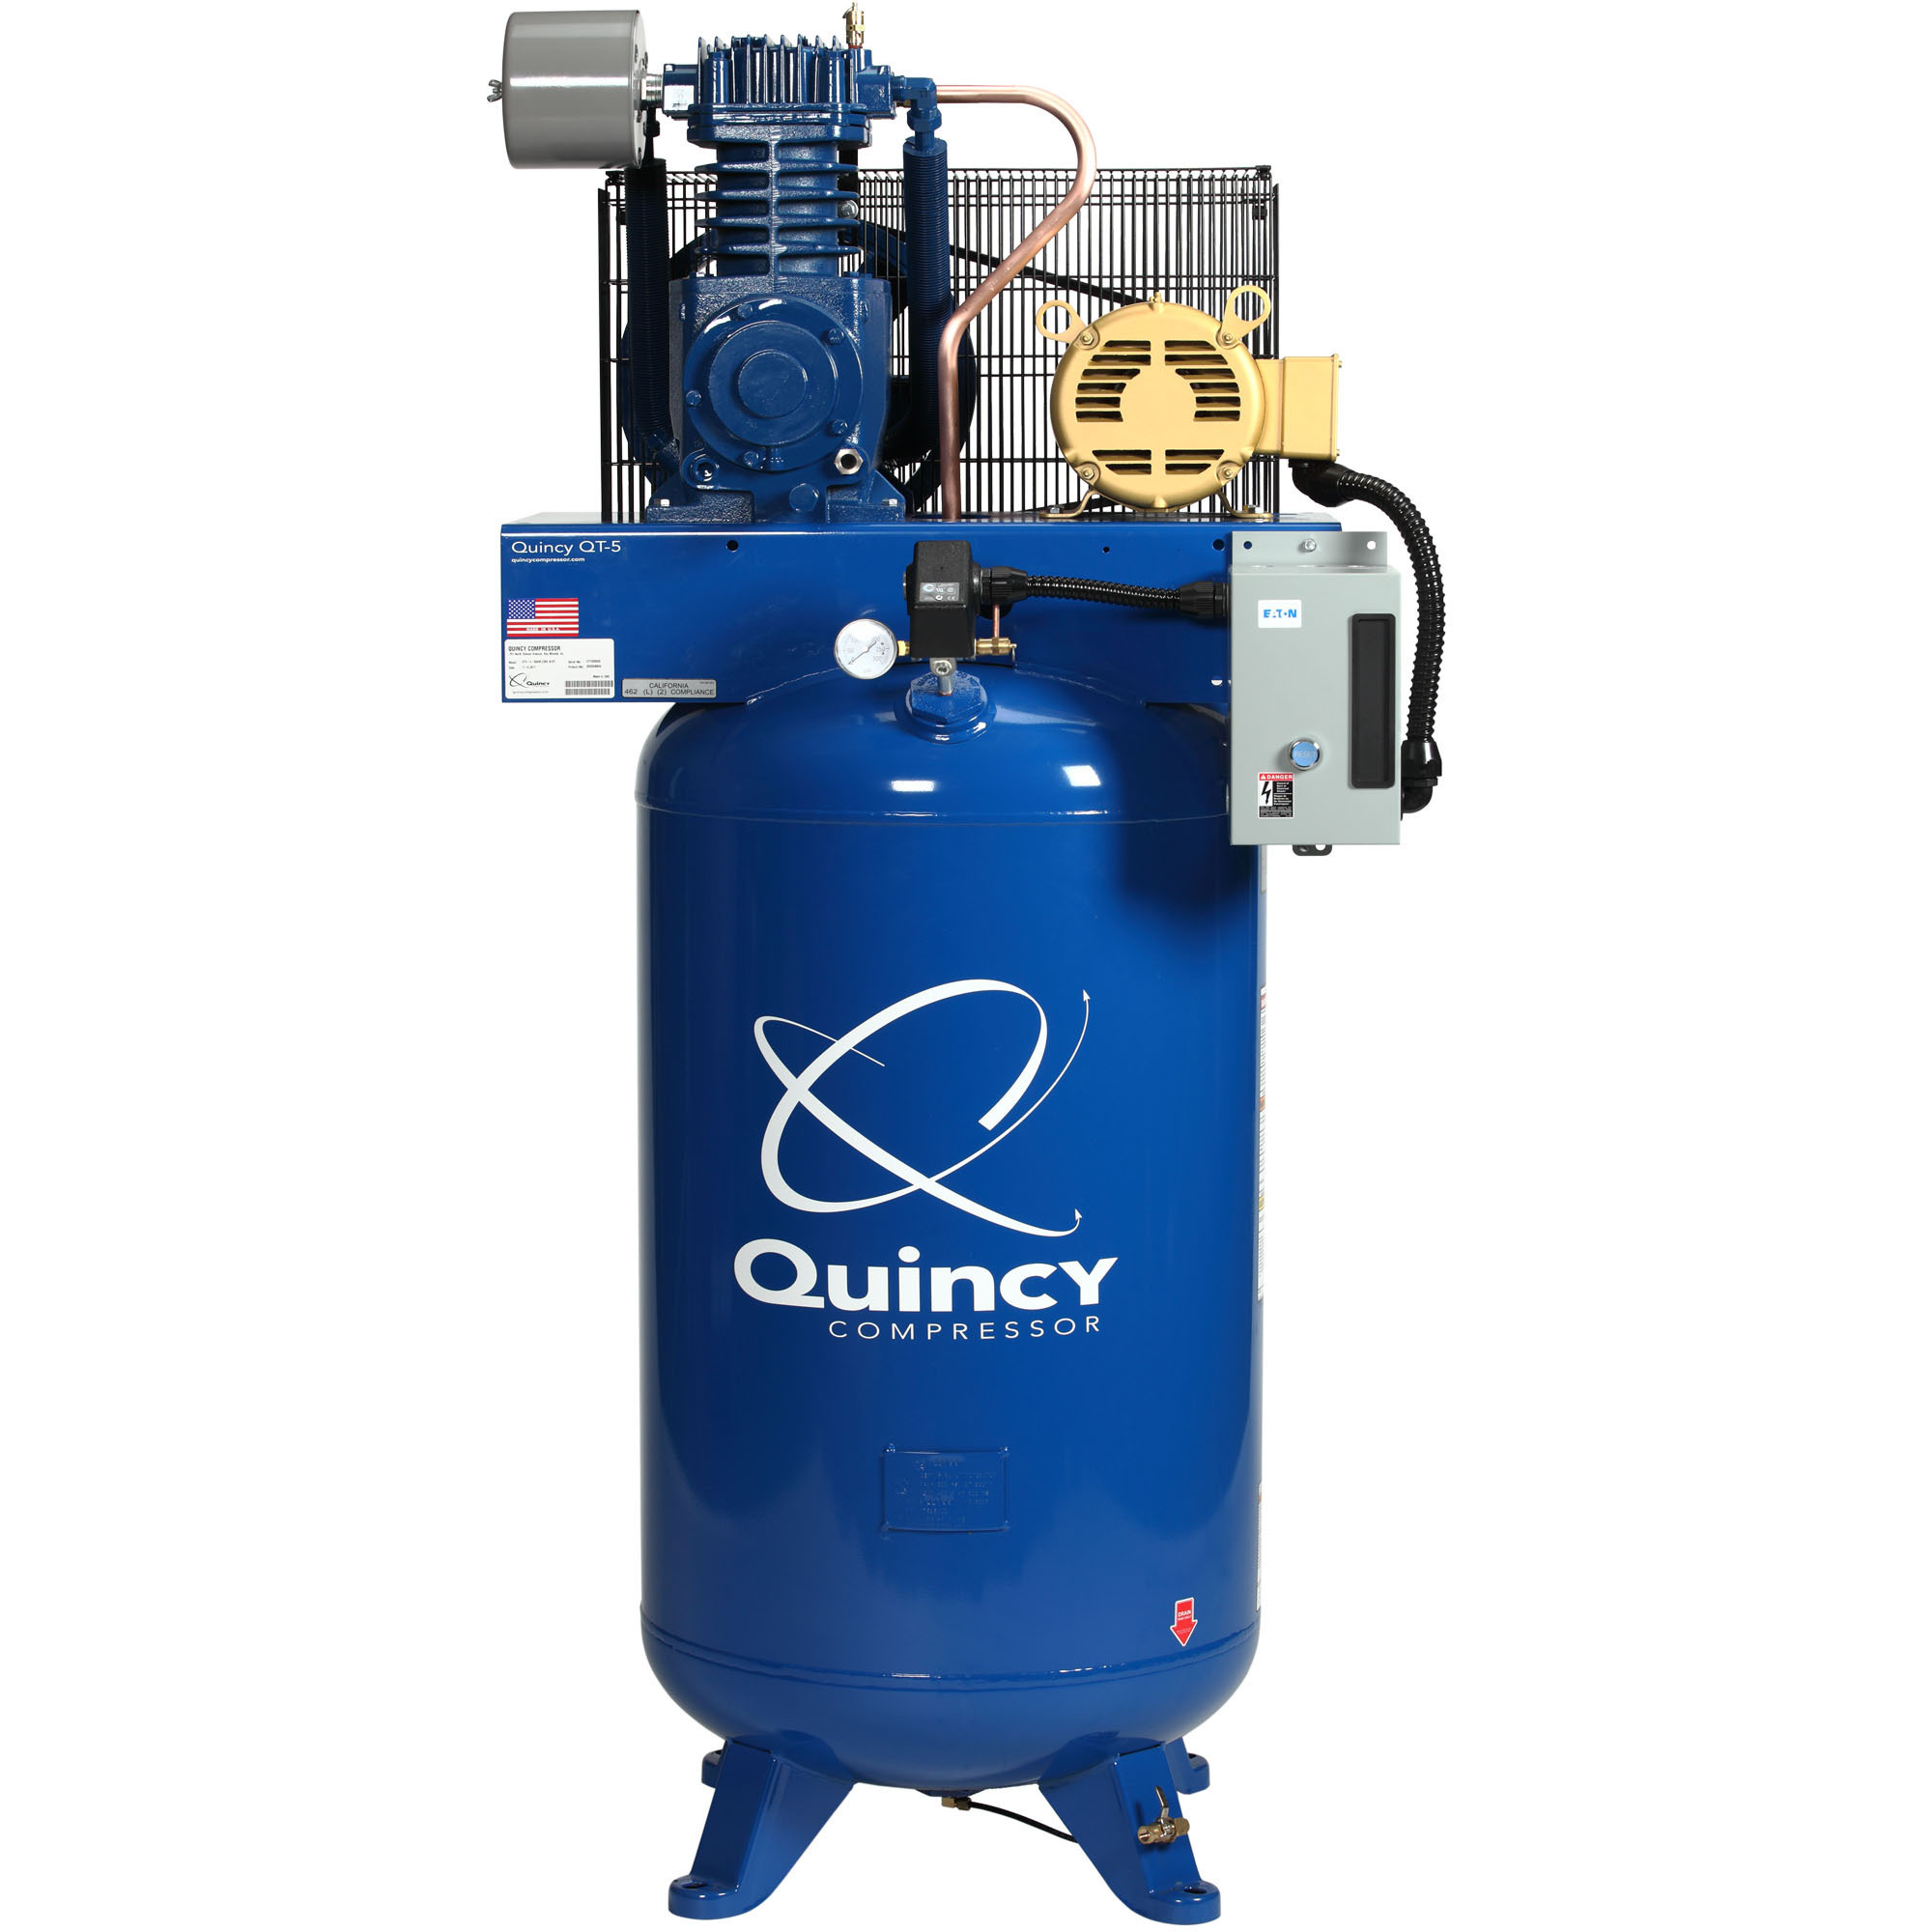 Quincy Compressor 2020040700